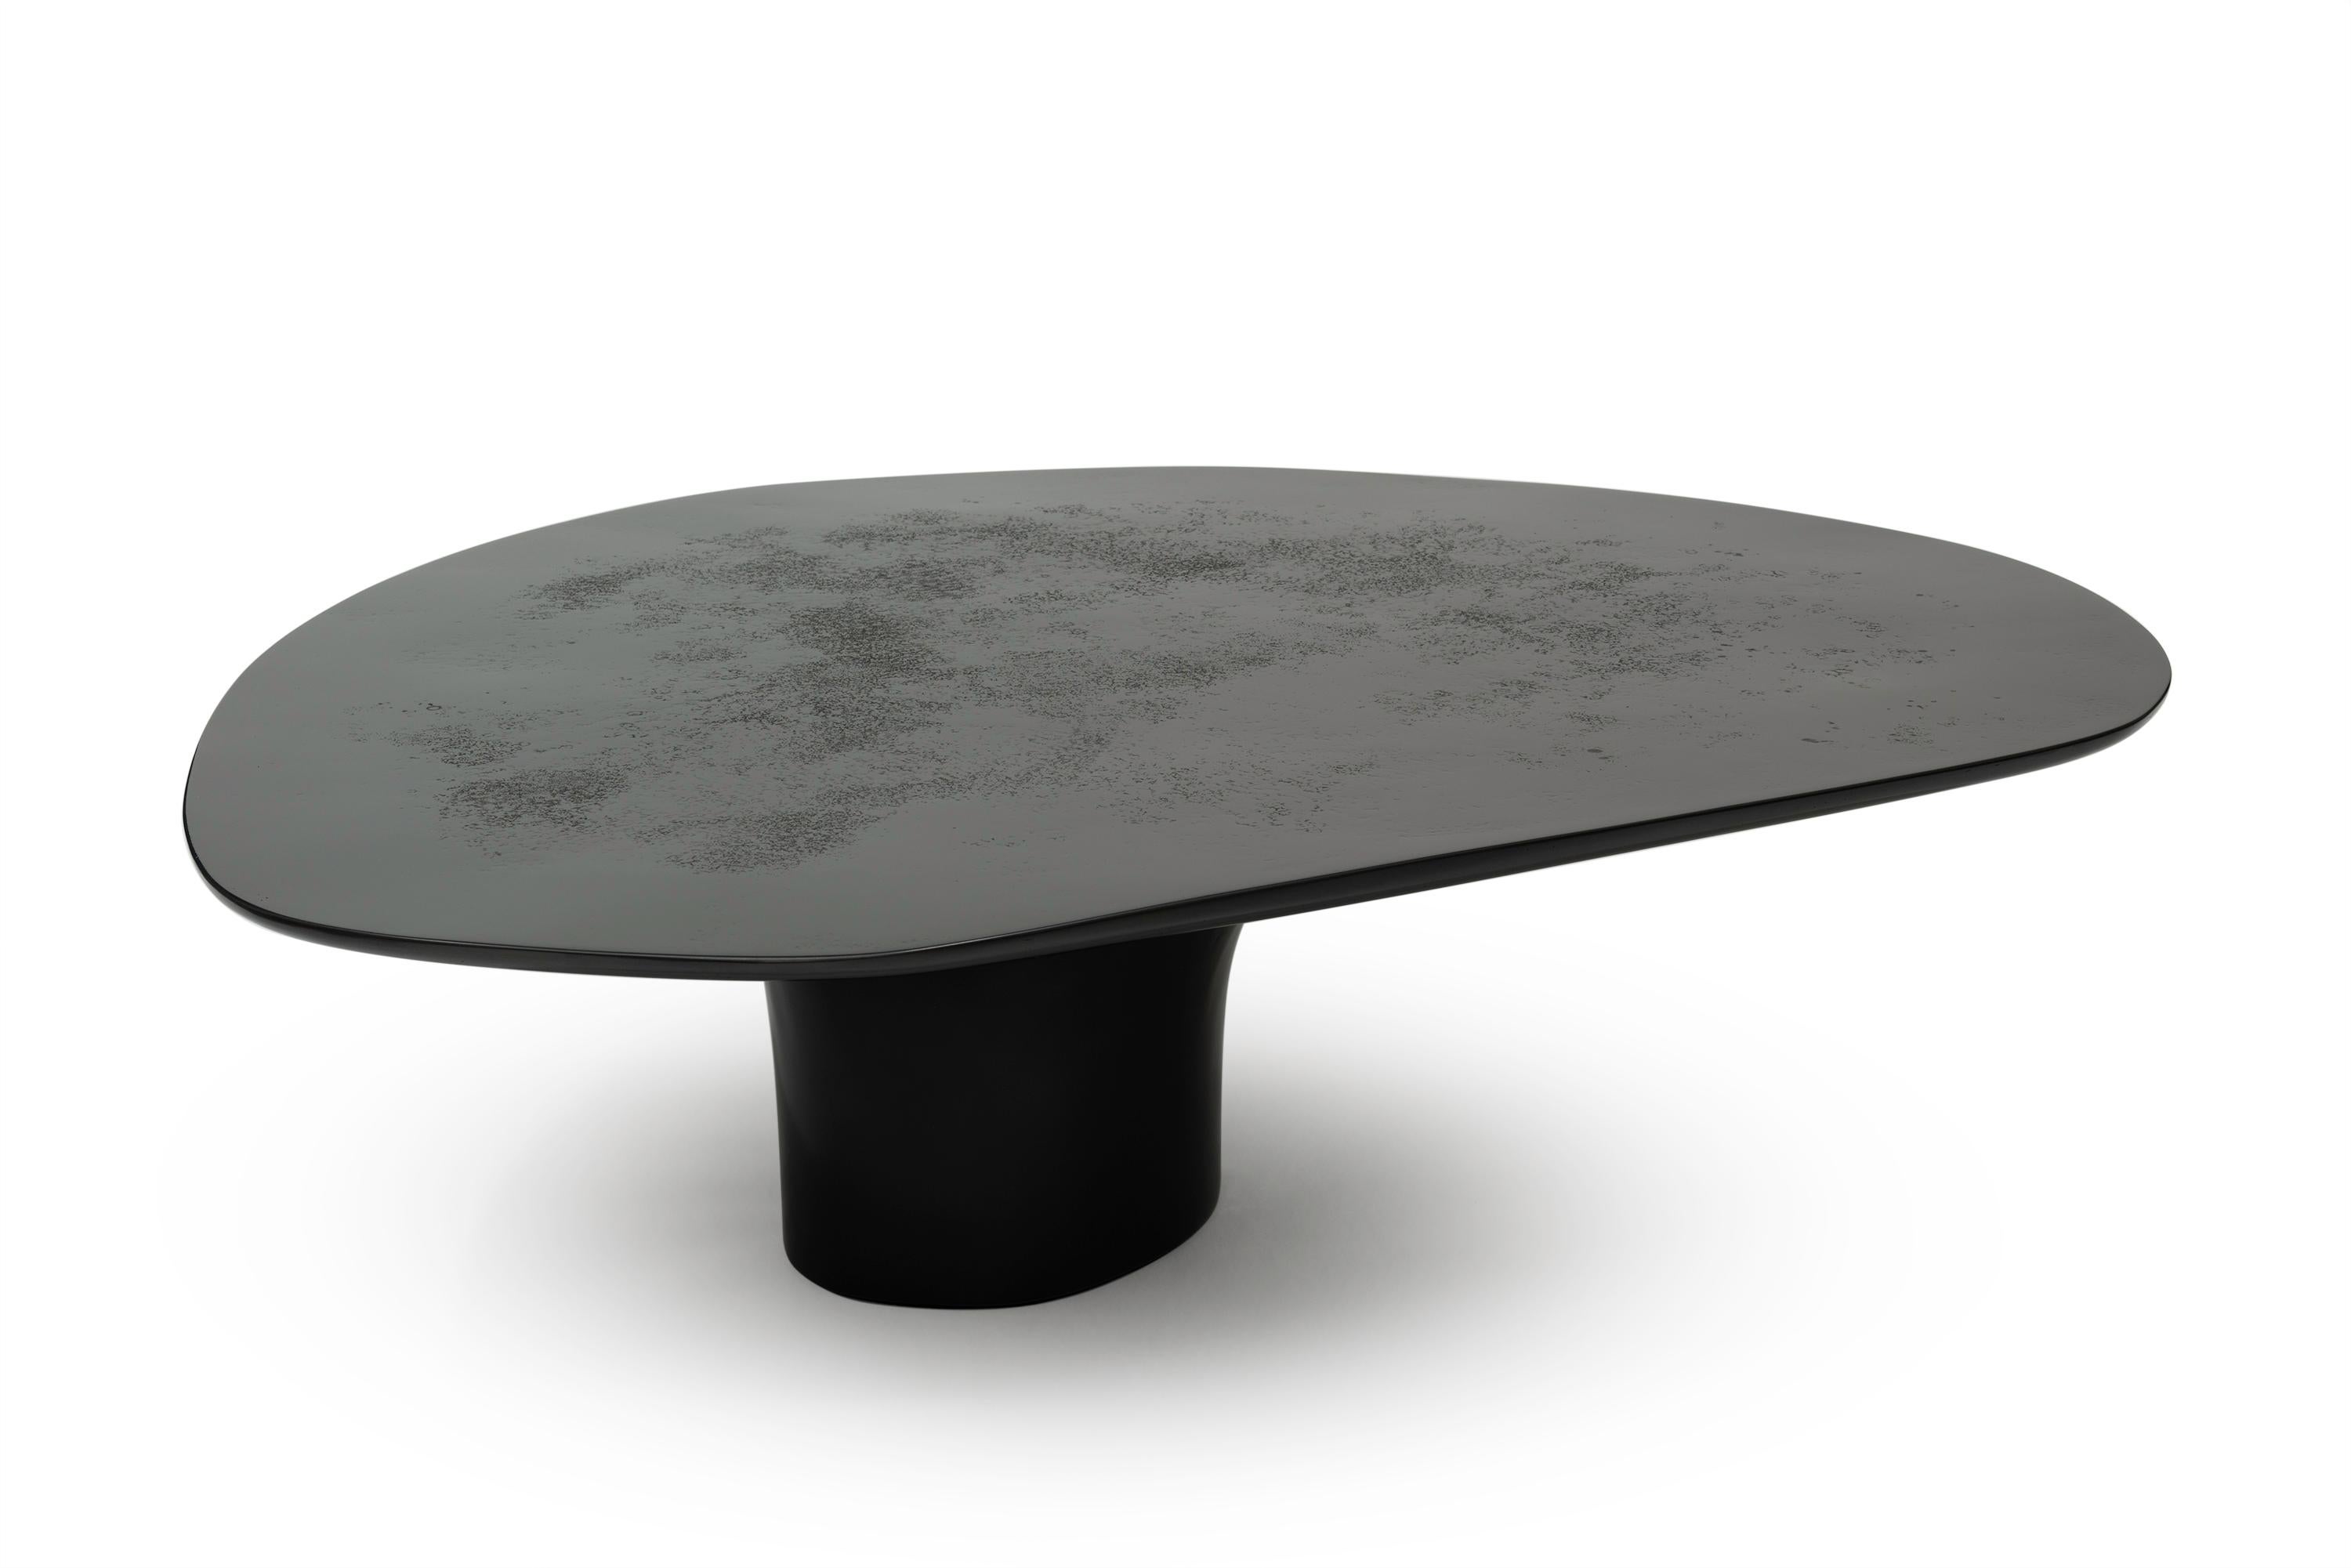 NR black smooth - Table basse circulaire noire sculpturale contemporaine du 21e siècle

La table basse aux formes intuitives et aux arêtes prononcées possède la touche de l'absence de gravité. La constitution du plateau et de la base donne